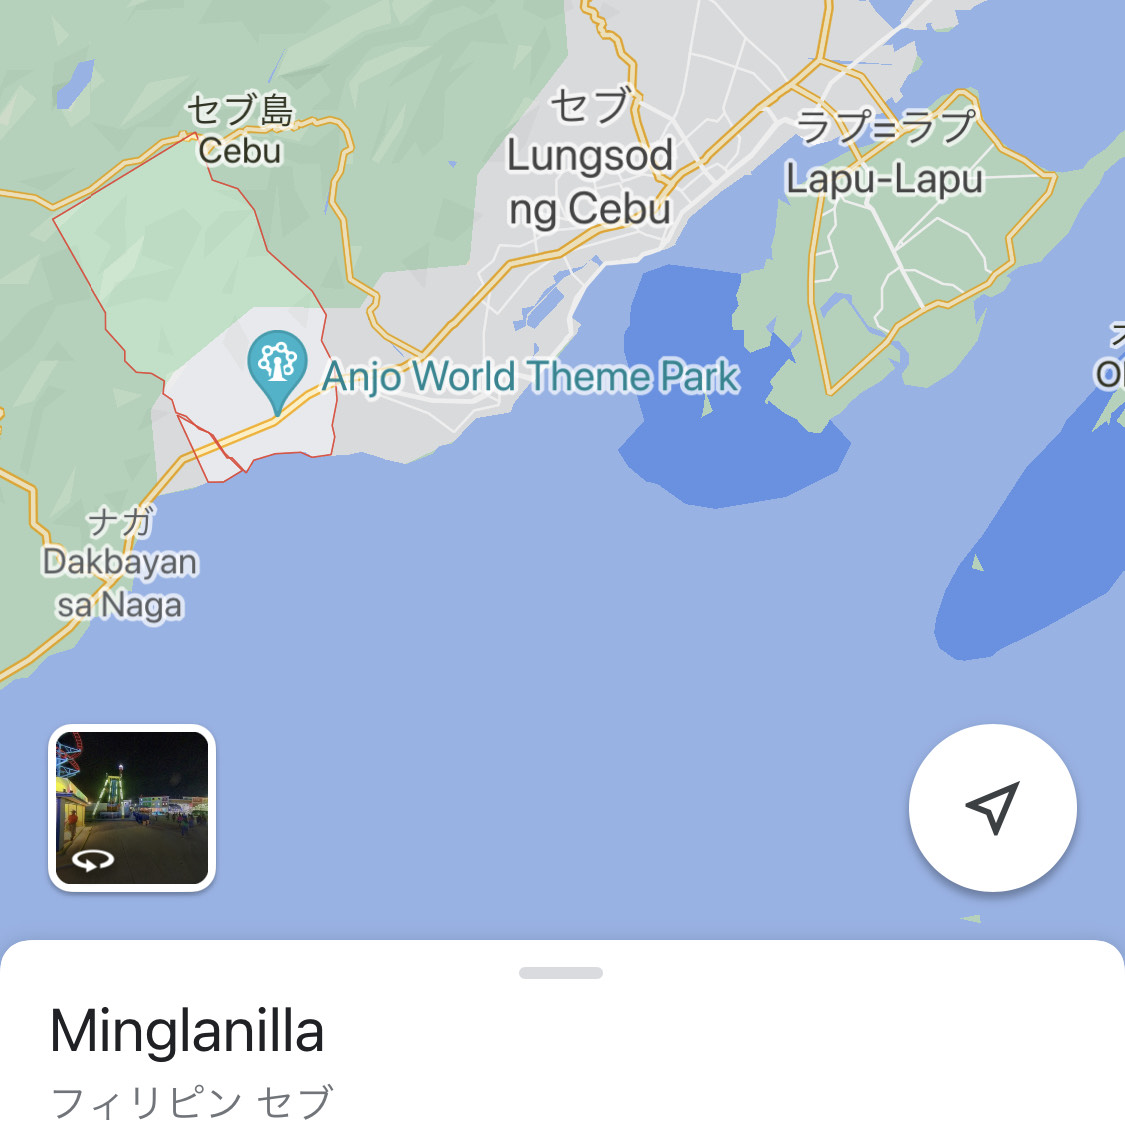 赤枠で囲まれているのが「Minglanilla」